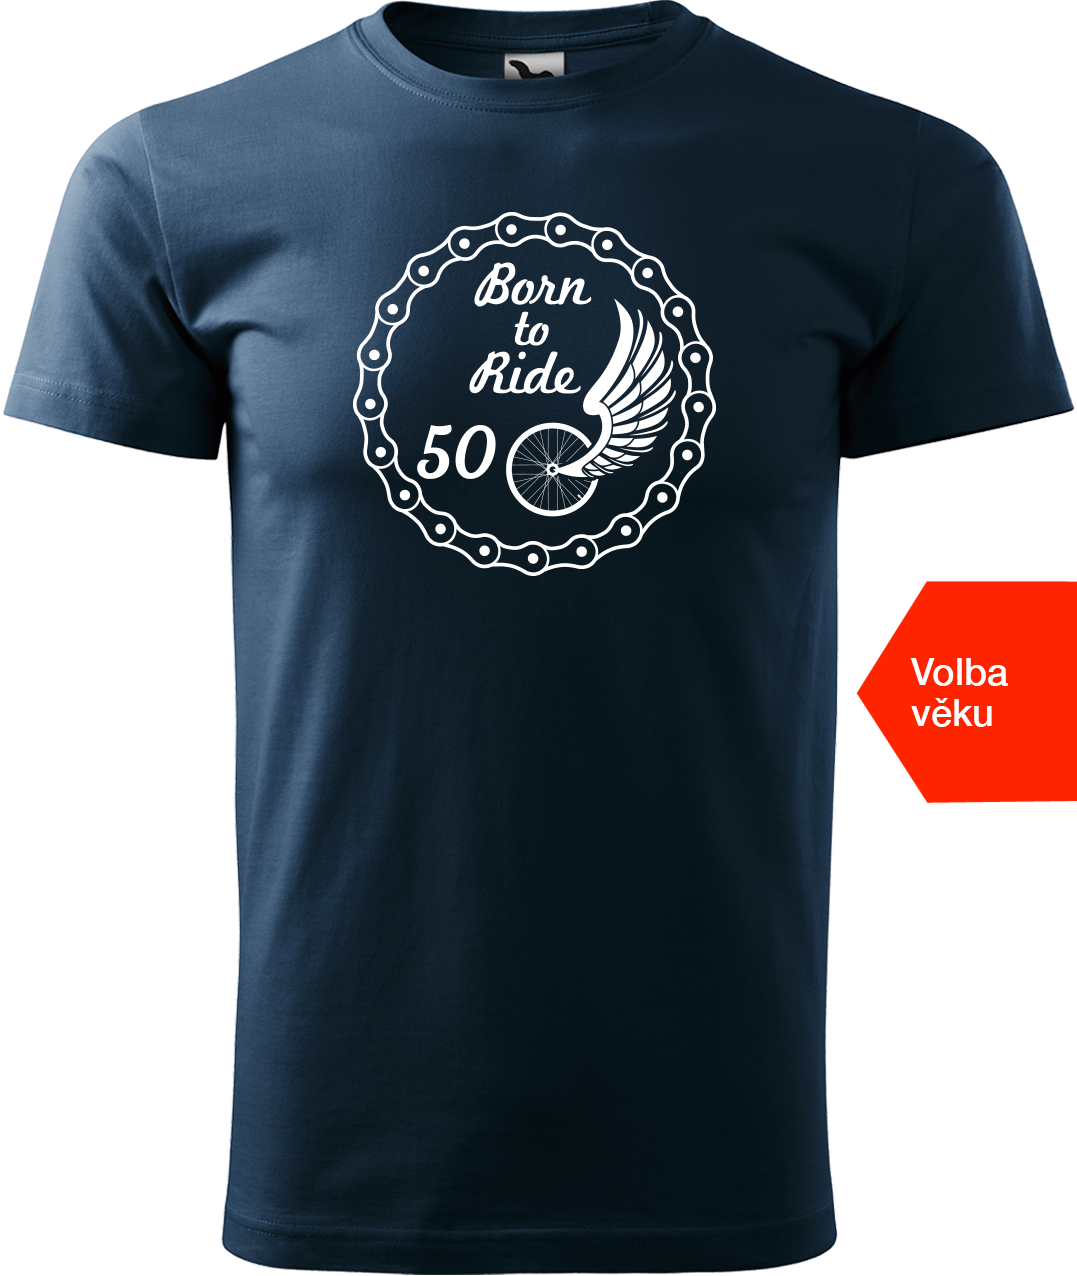 Pánské tričko pro cyklistu s věkem - Born to Ride (wings) Velikost: 4XL, Barva: Námořní modrá (02)